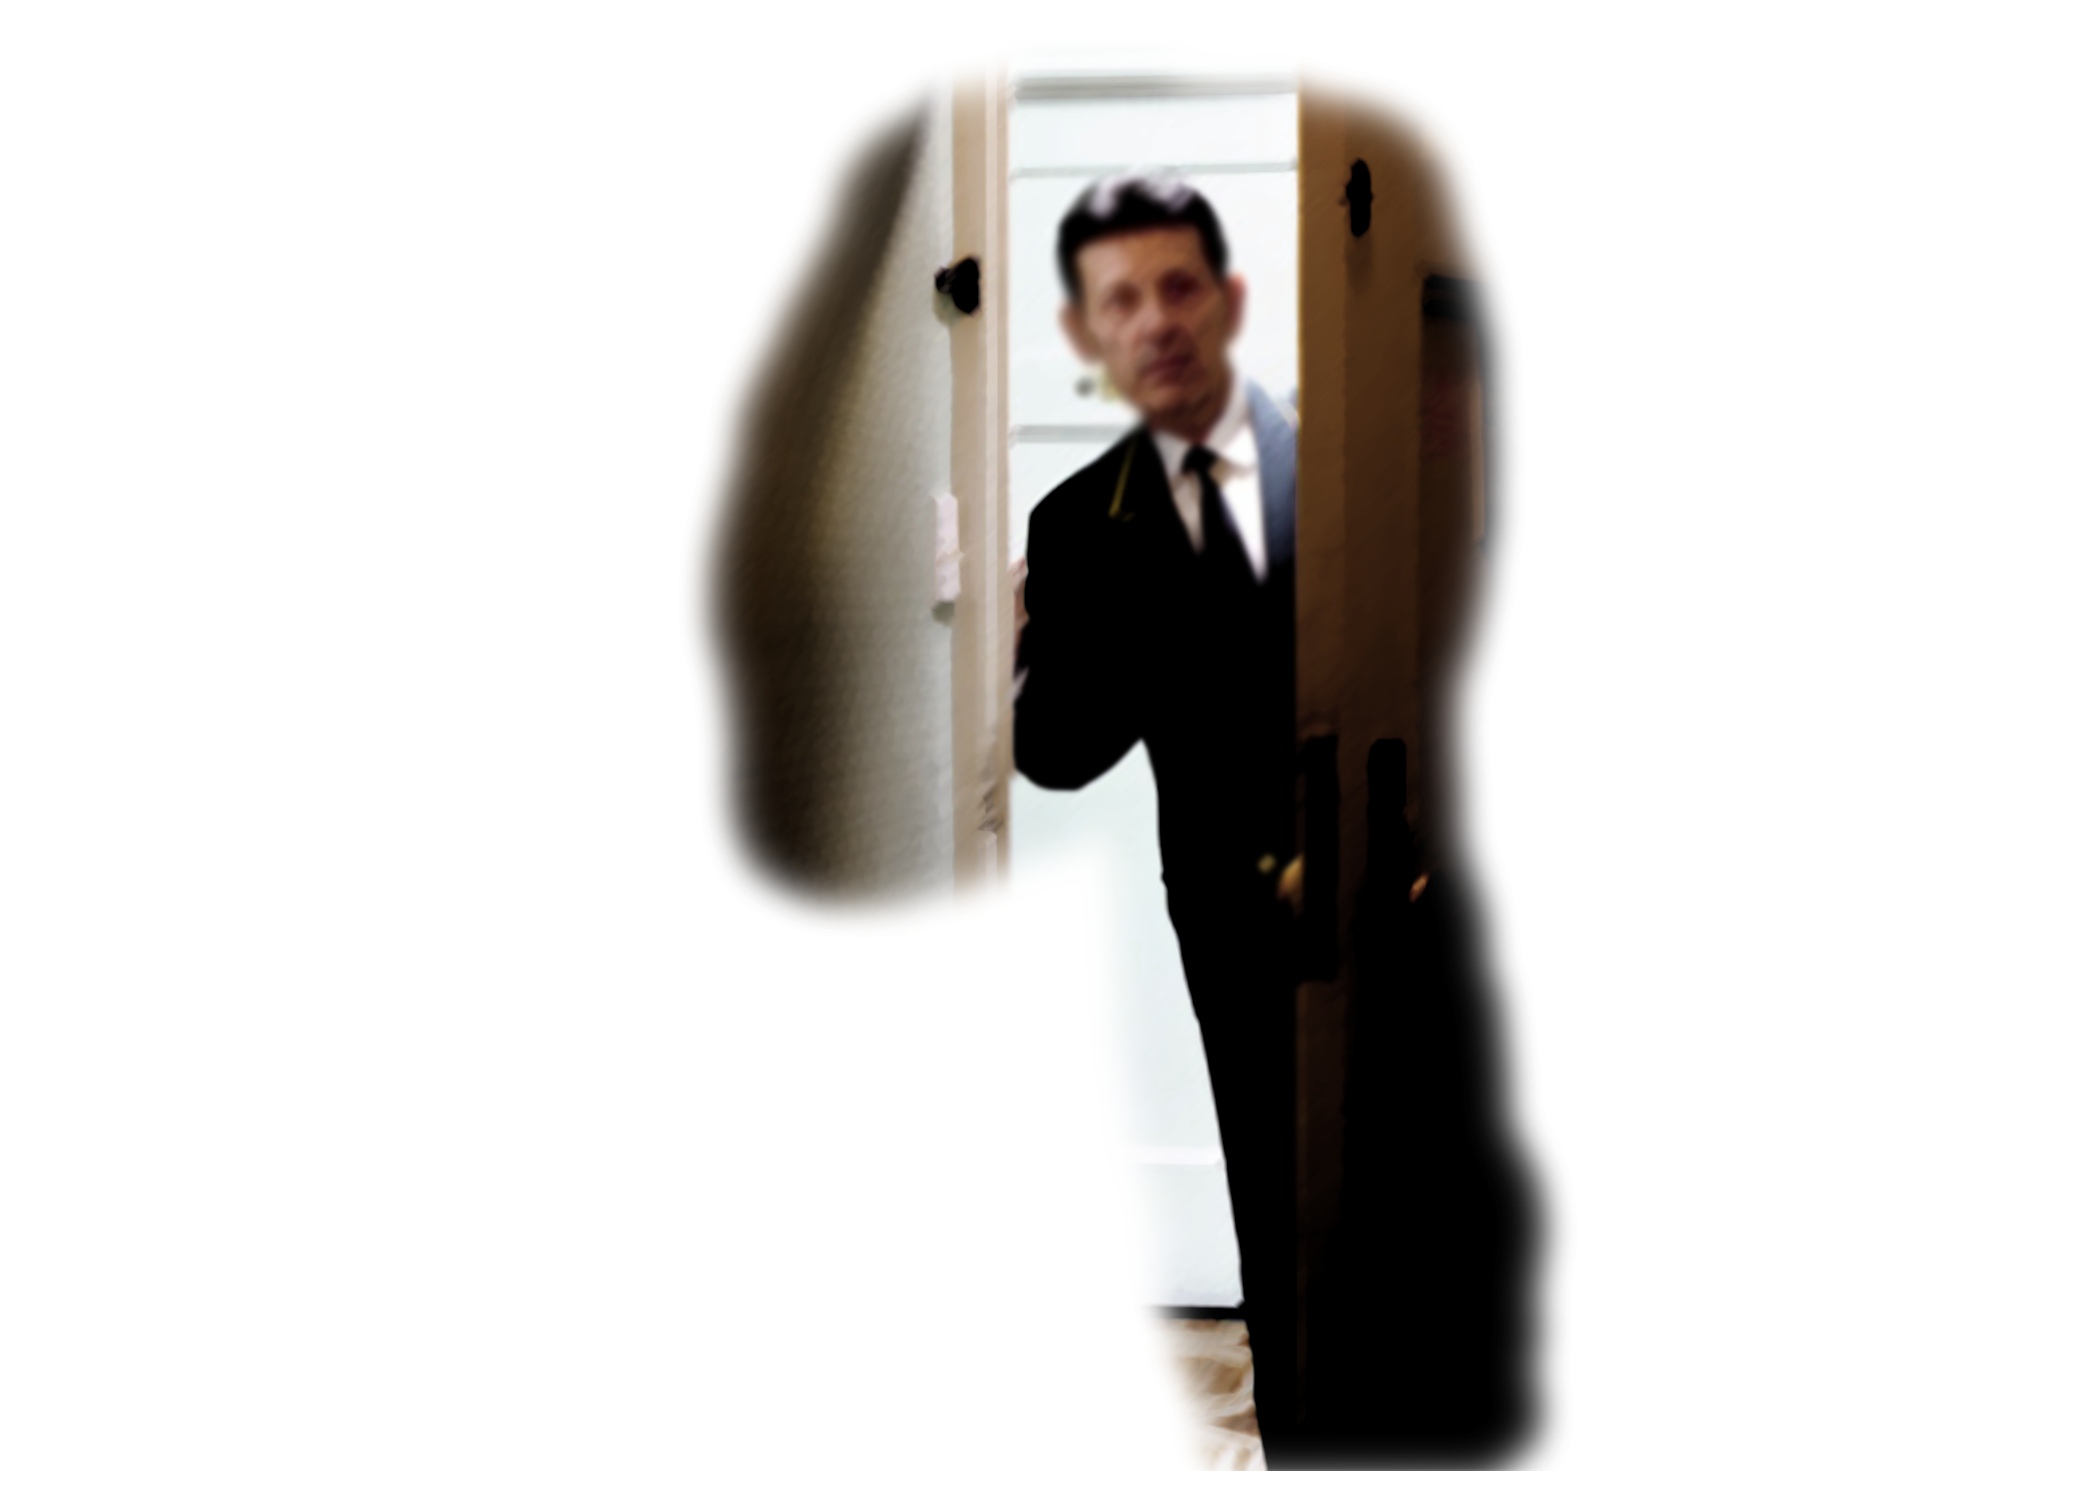 peeking through the door